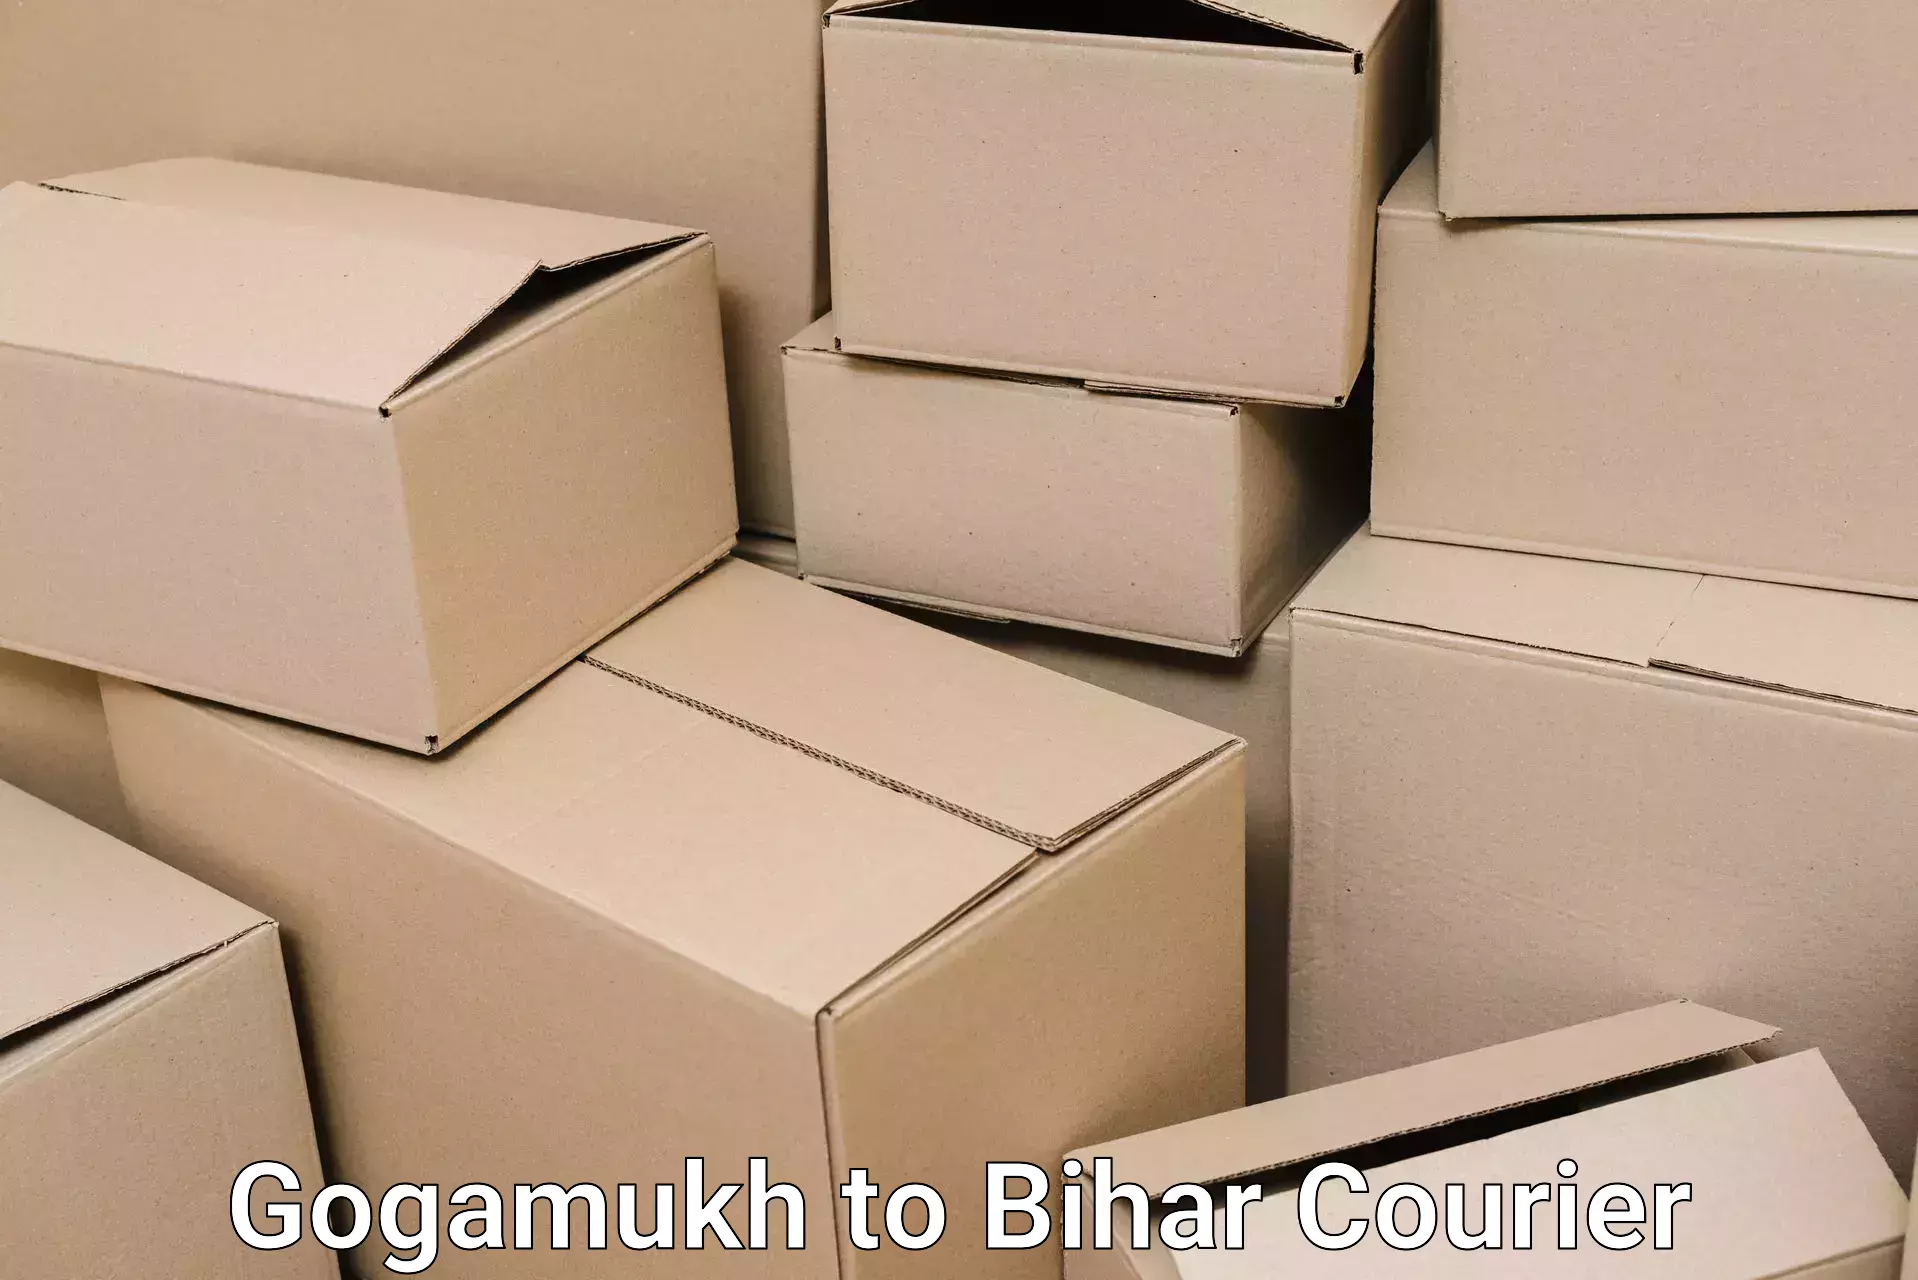 Specialized moving company Gogamukh to Tekari